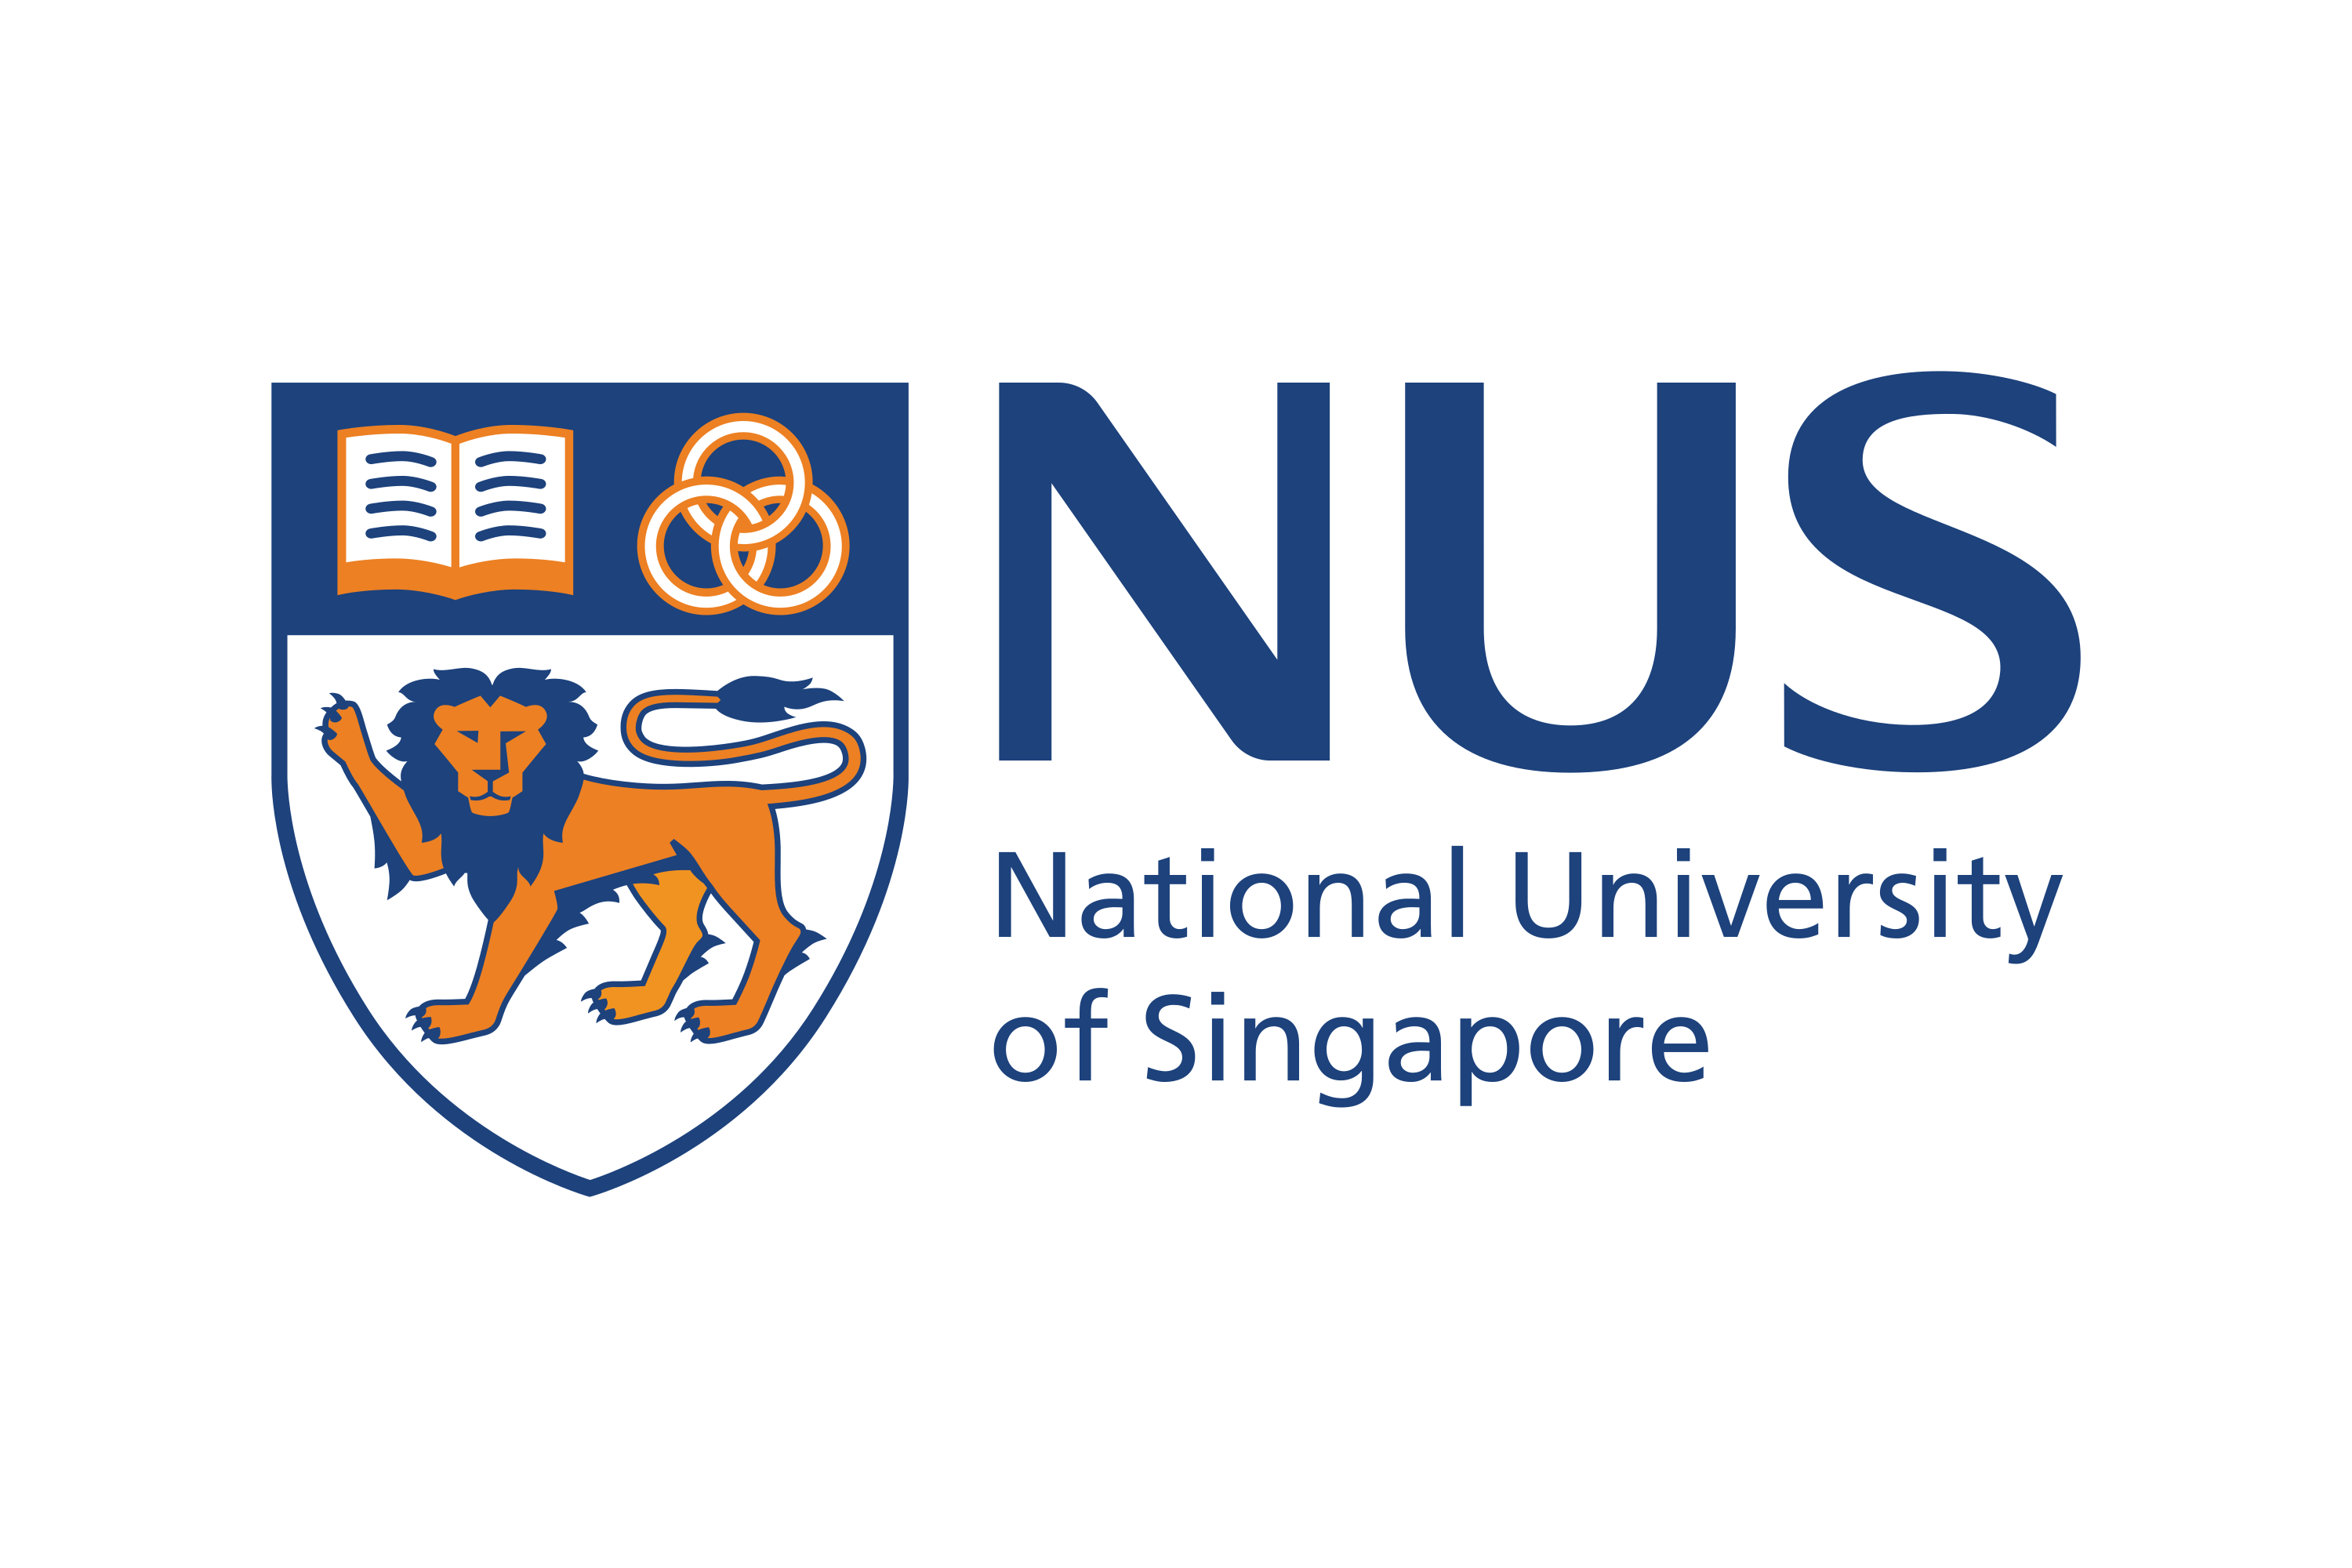 Scarica il logo dell'Università Nazionale di Singapore (NUS) in formato SVG vettoriale o ...